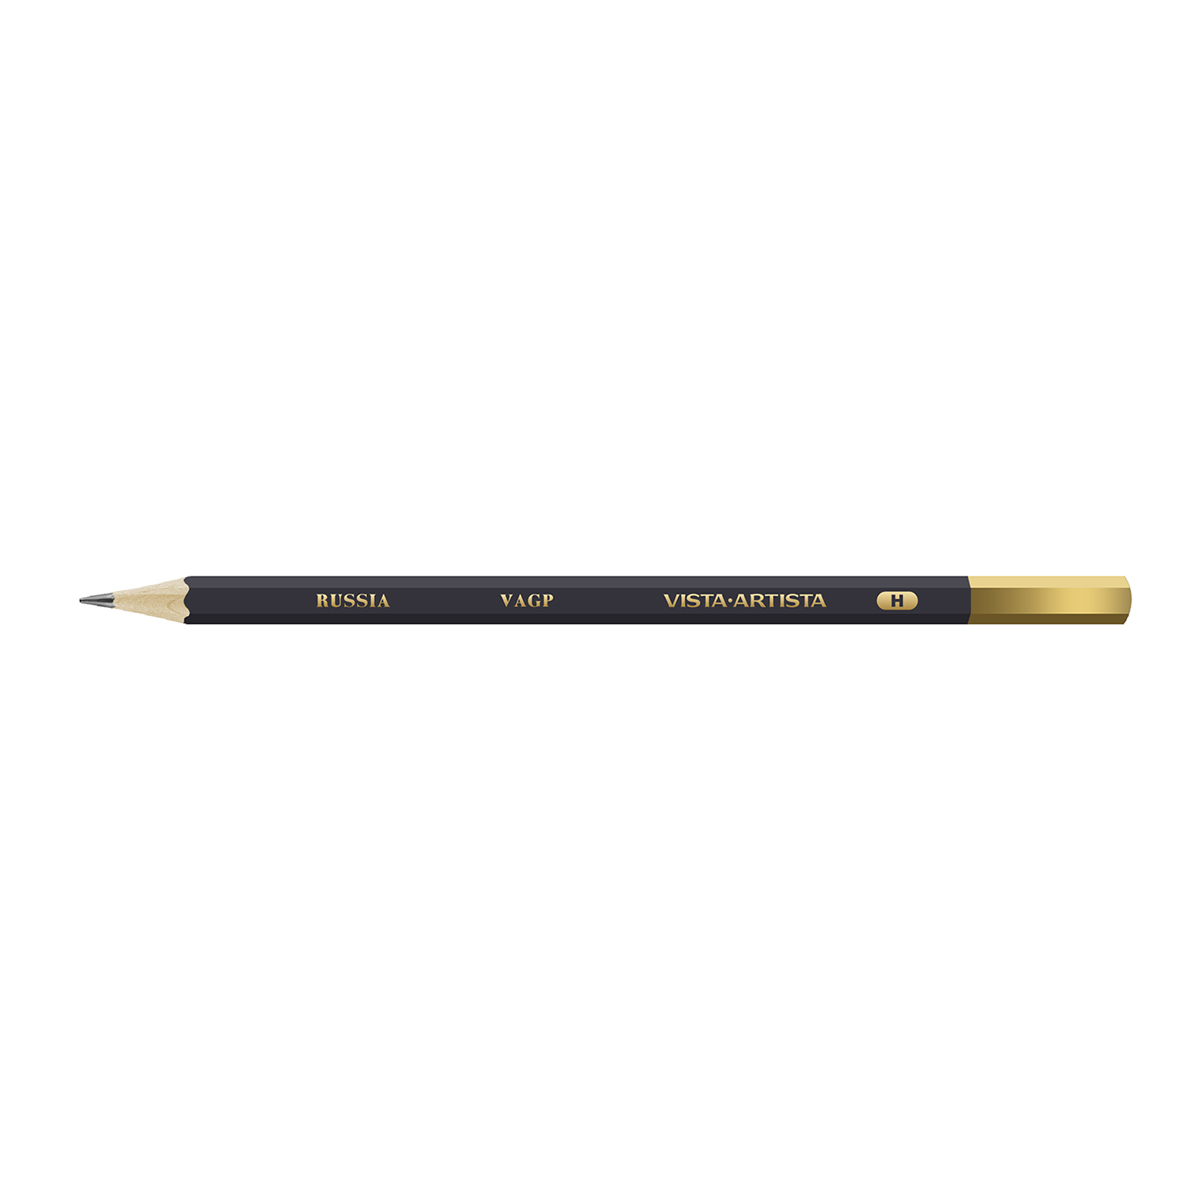 VISTA-ARTISTA VAGP Чернографитный карандаш заточенный Т (H) . Фото 1.